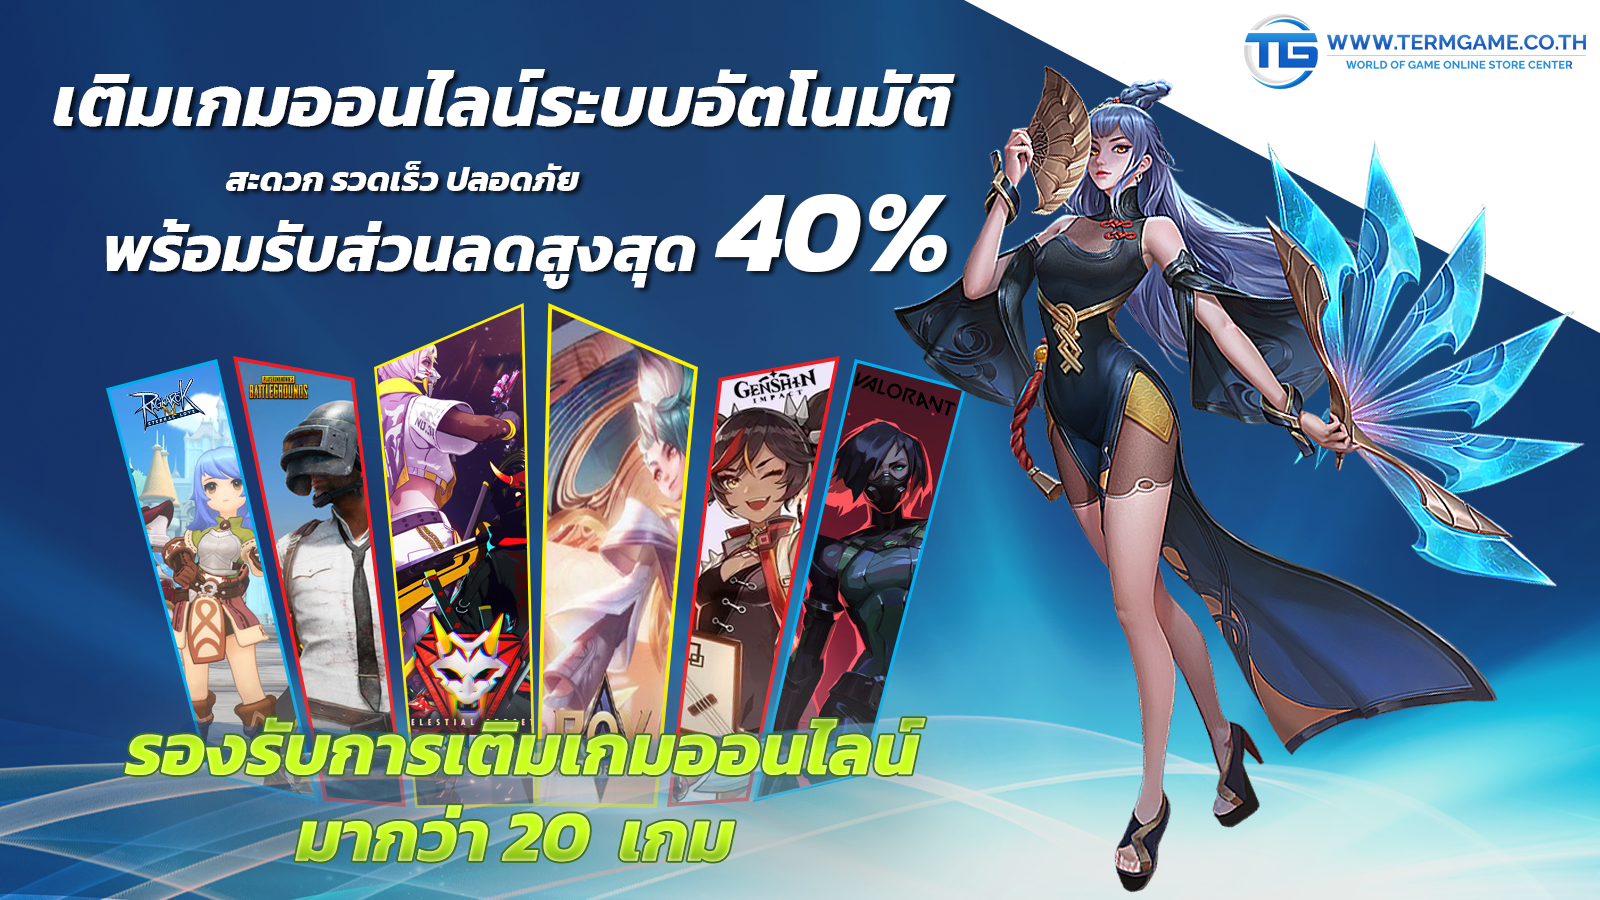 บริการเติมเกมออนไลน์ทั้งเกมมือถือและเกมคอมพิวเตอร์ มีส่วนลดที่ถูกที่สุดในไทย